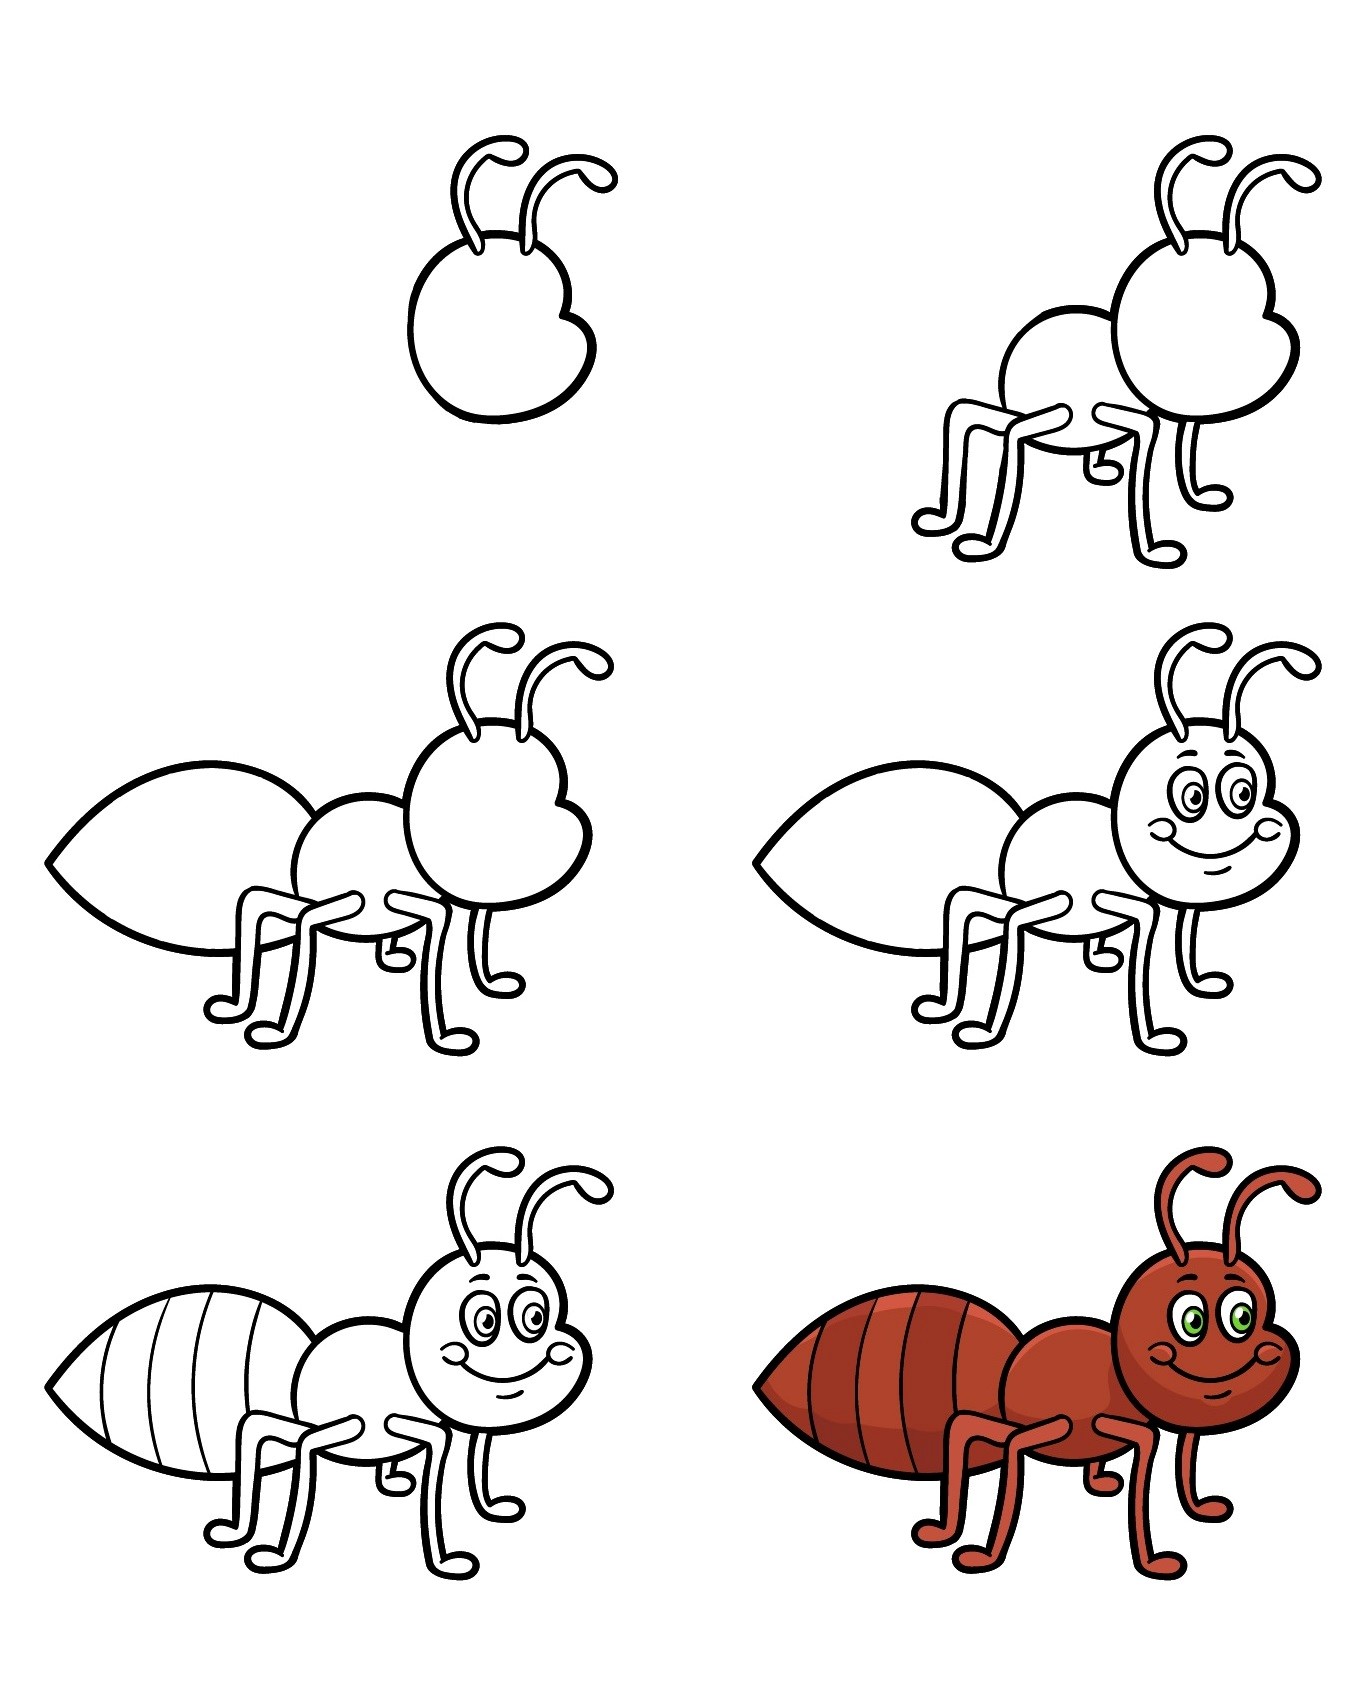 Karınca fikri 5 çizimi